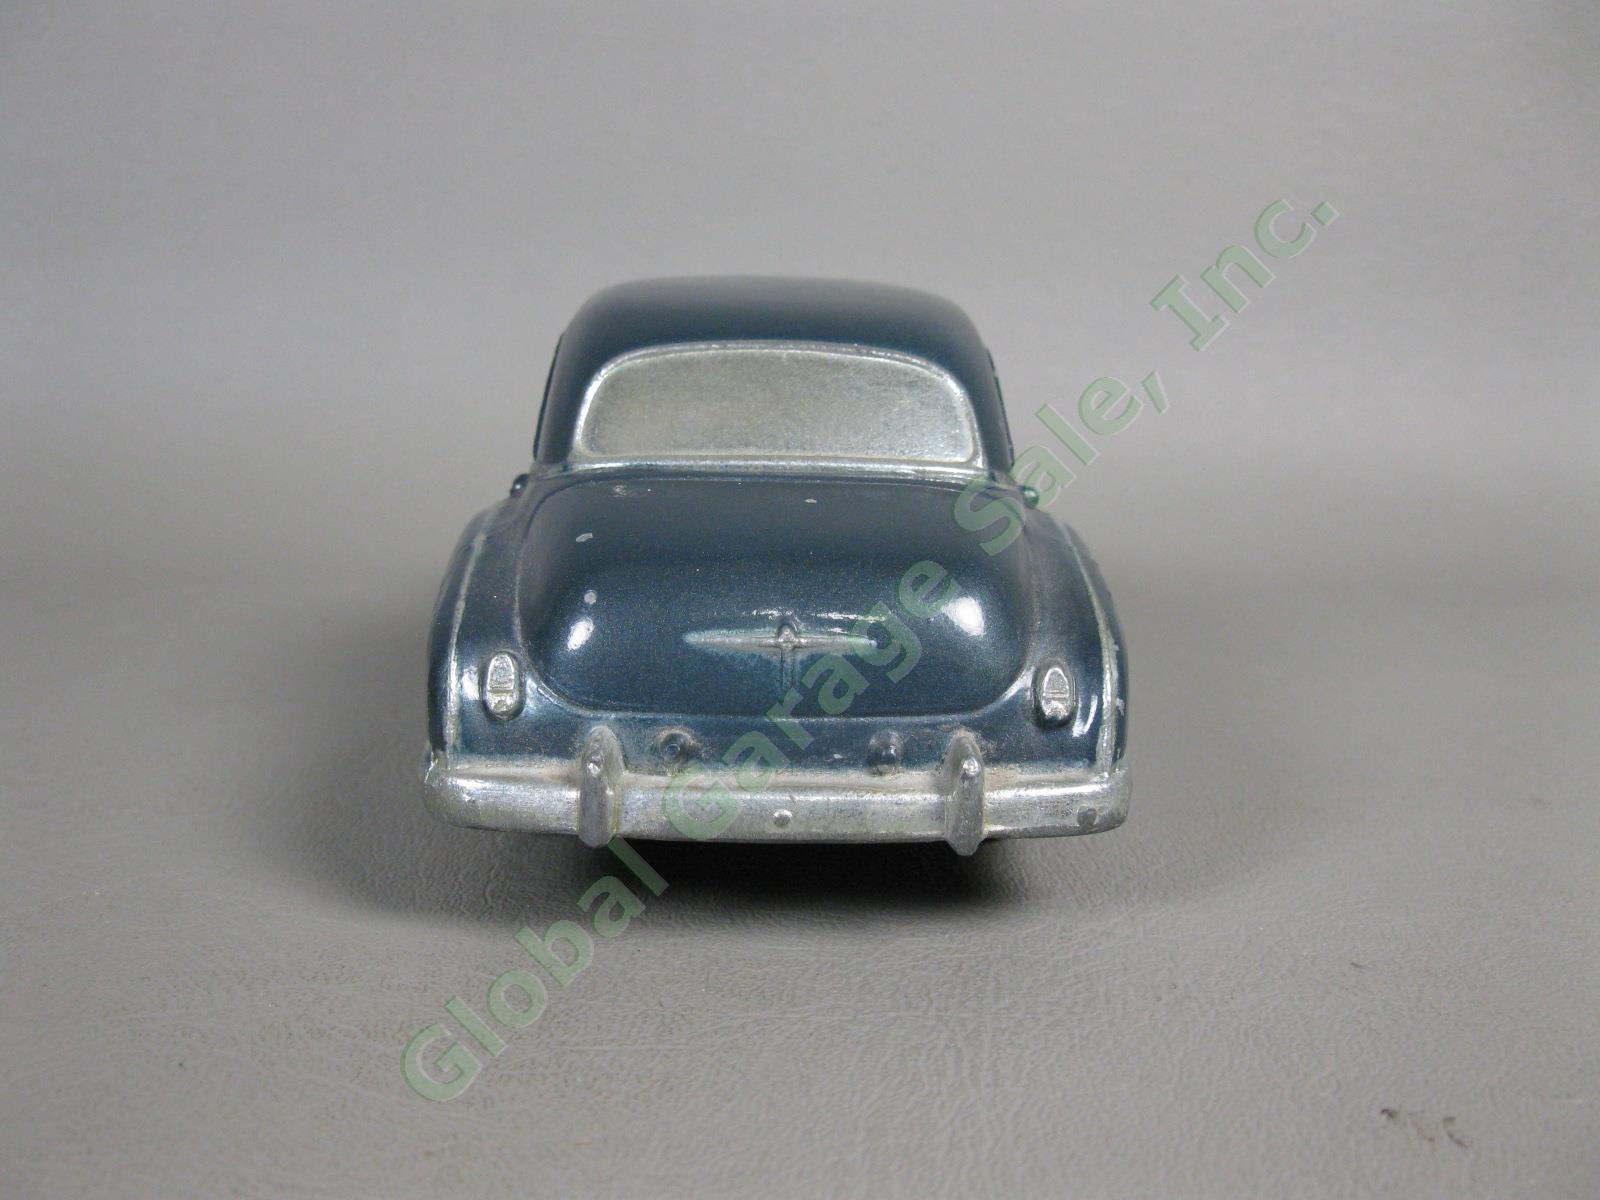 1950 Chevrolet Styleline DeLuxe Windsor Blue Sedan Banthrico Dealer Promo Car NR 4